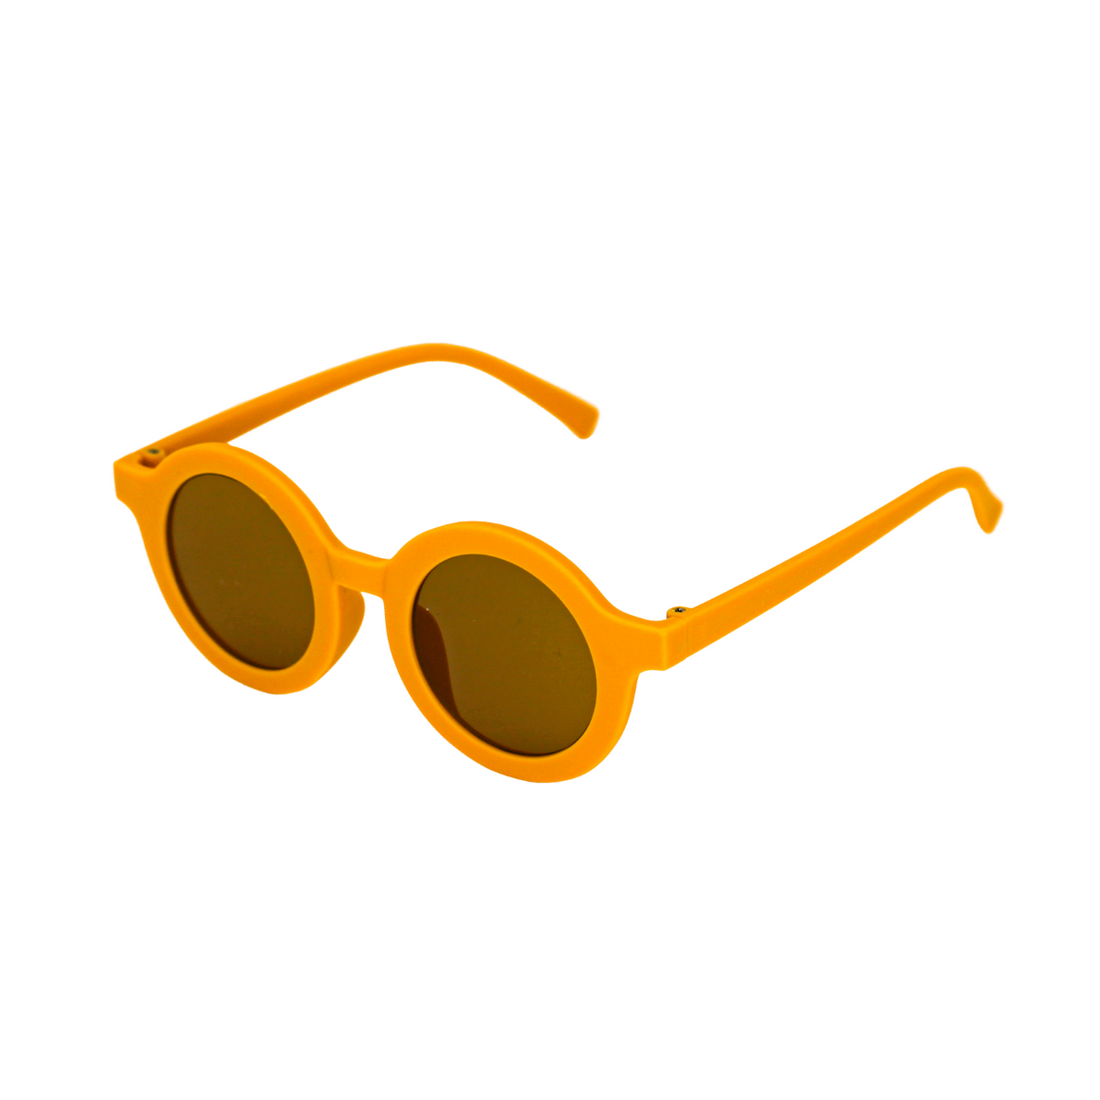 Jetsetters Sunglasses - Unisex- Yellow (3-6 Years)